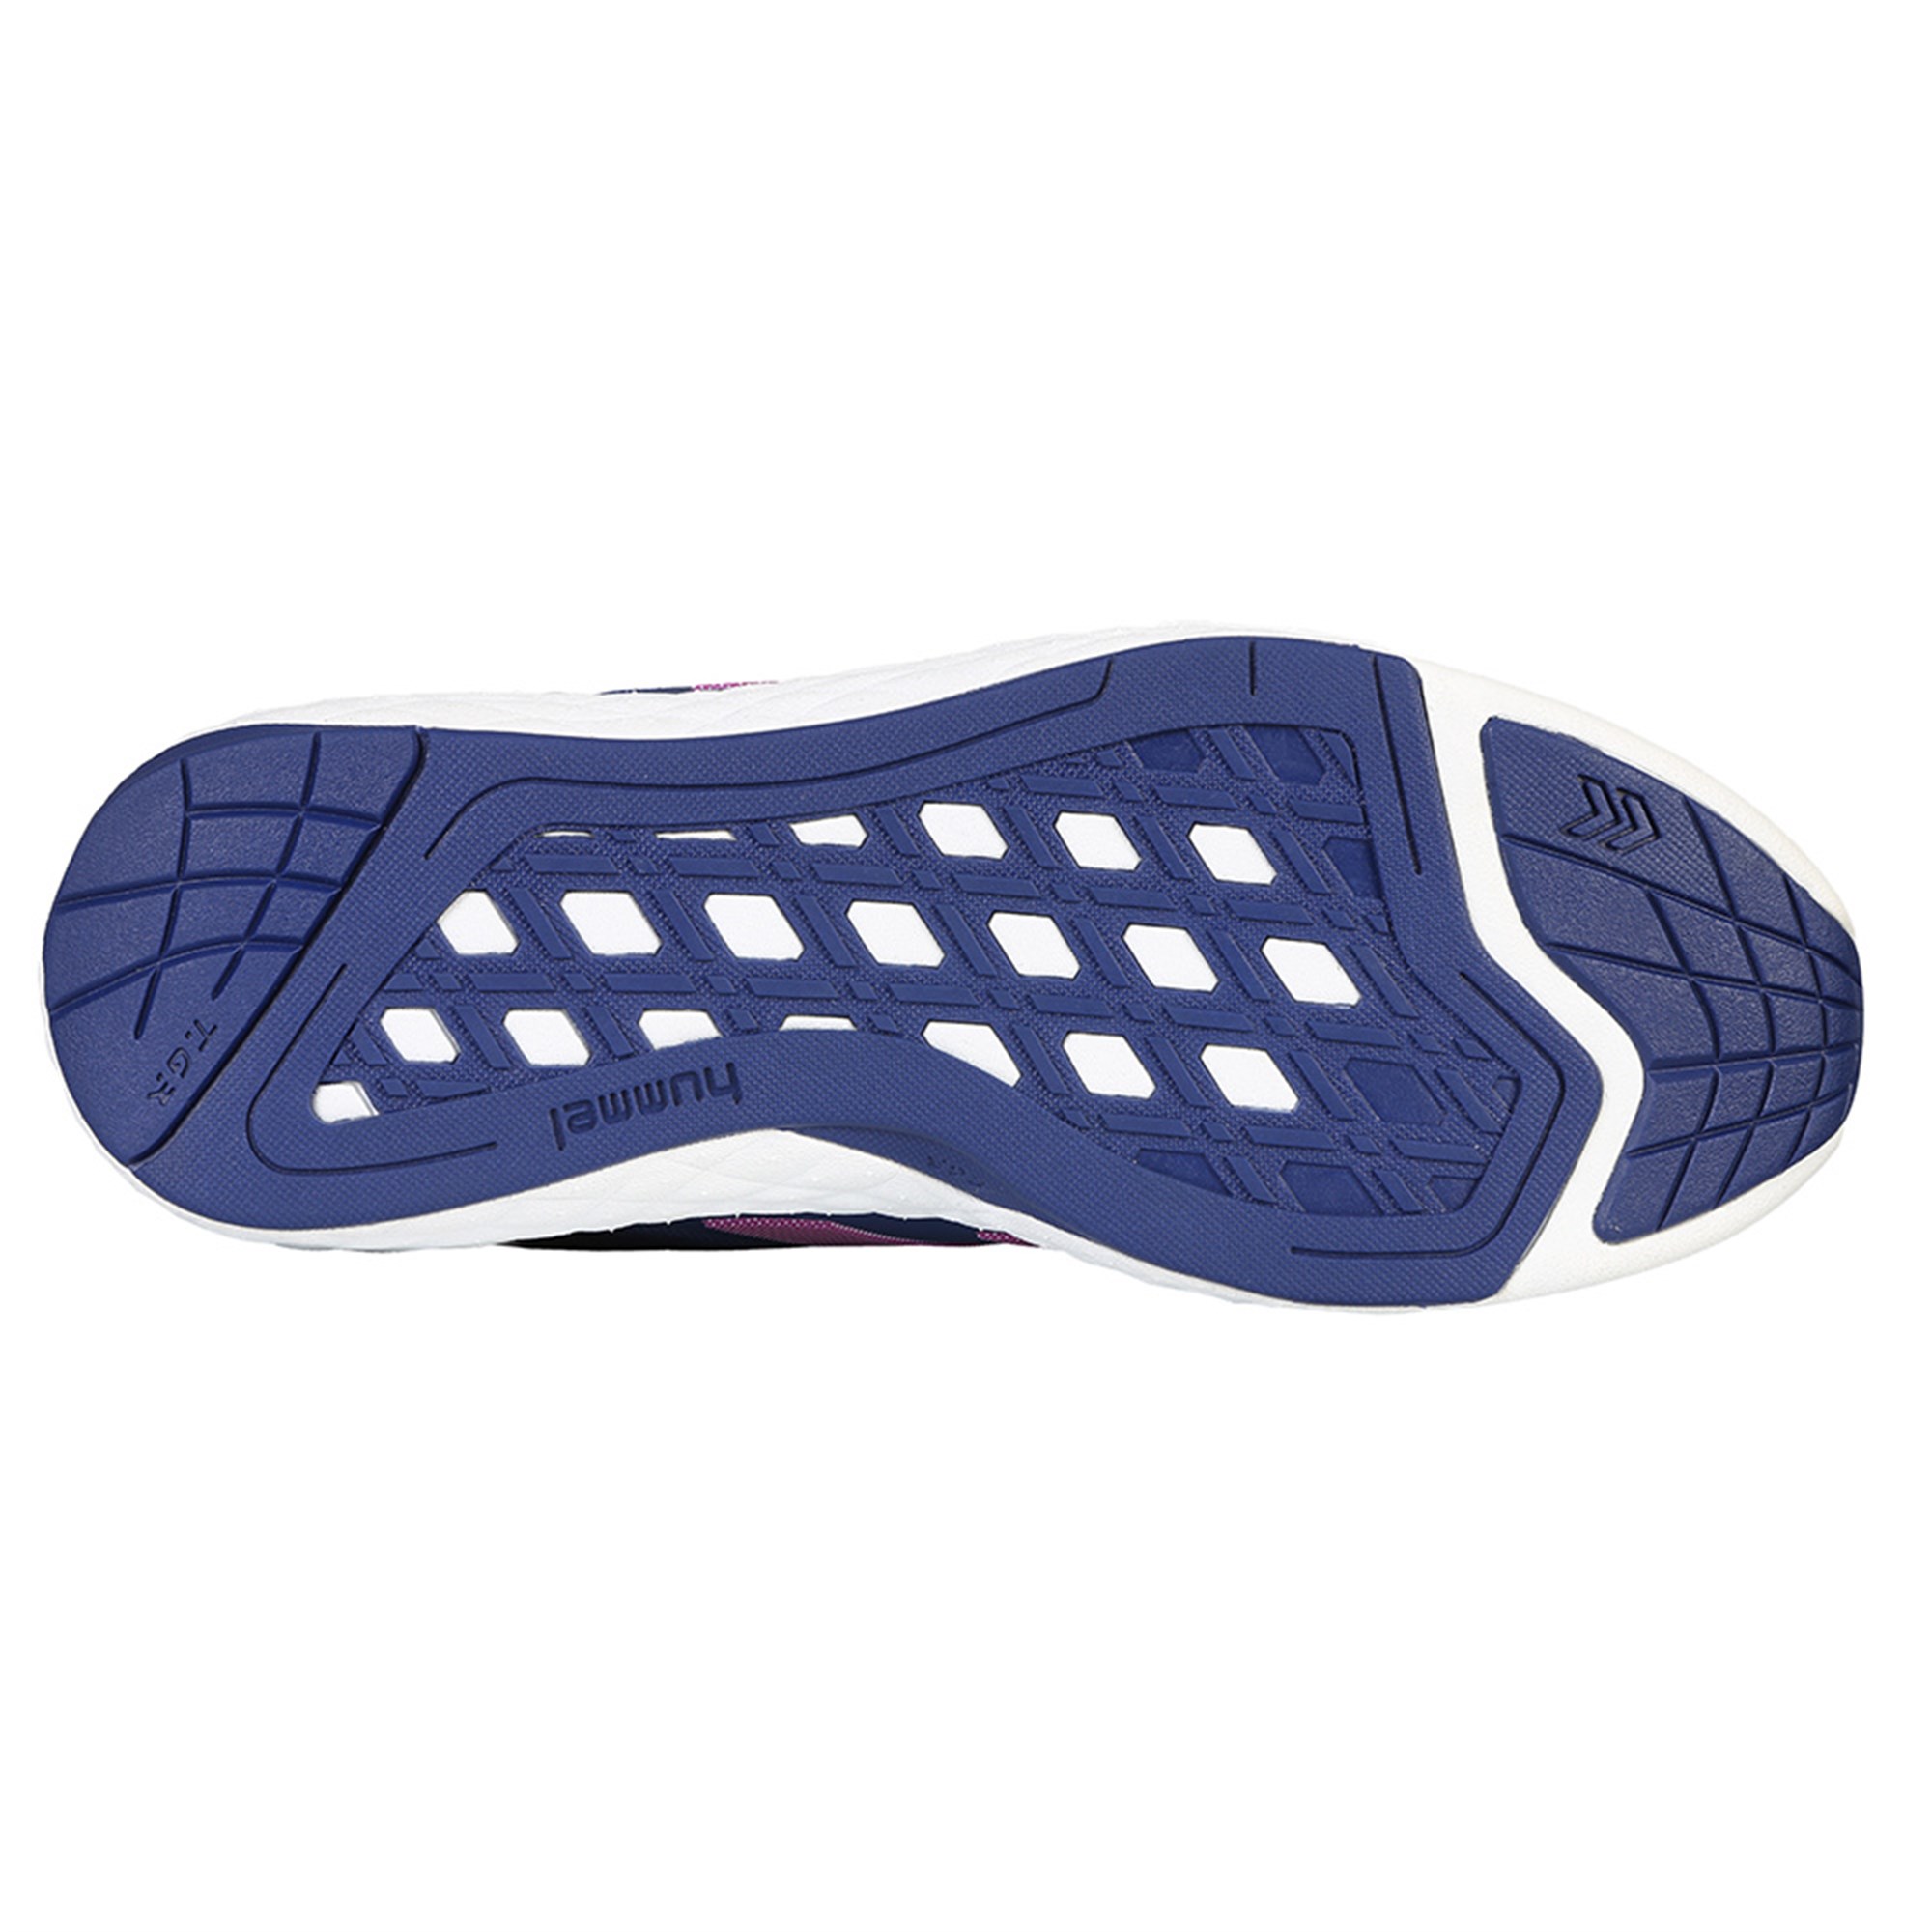 Hummel TerraFly LT Bayan Spor Ayakkabı Ürün kodu: 060425-X02 | Etichet Sport